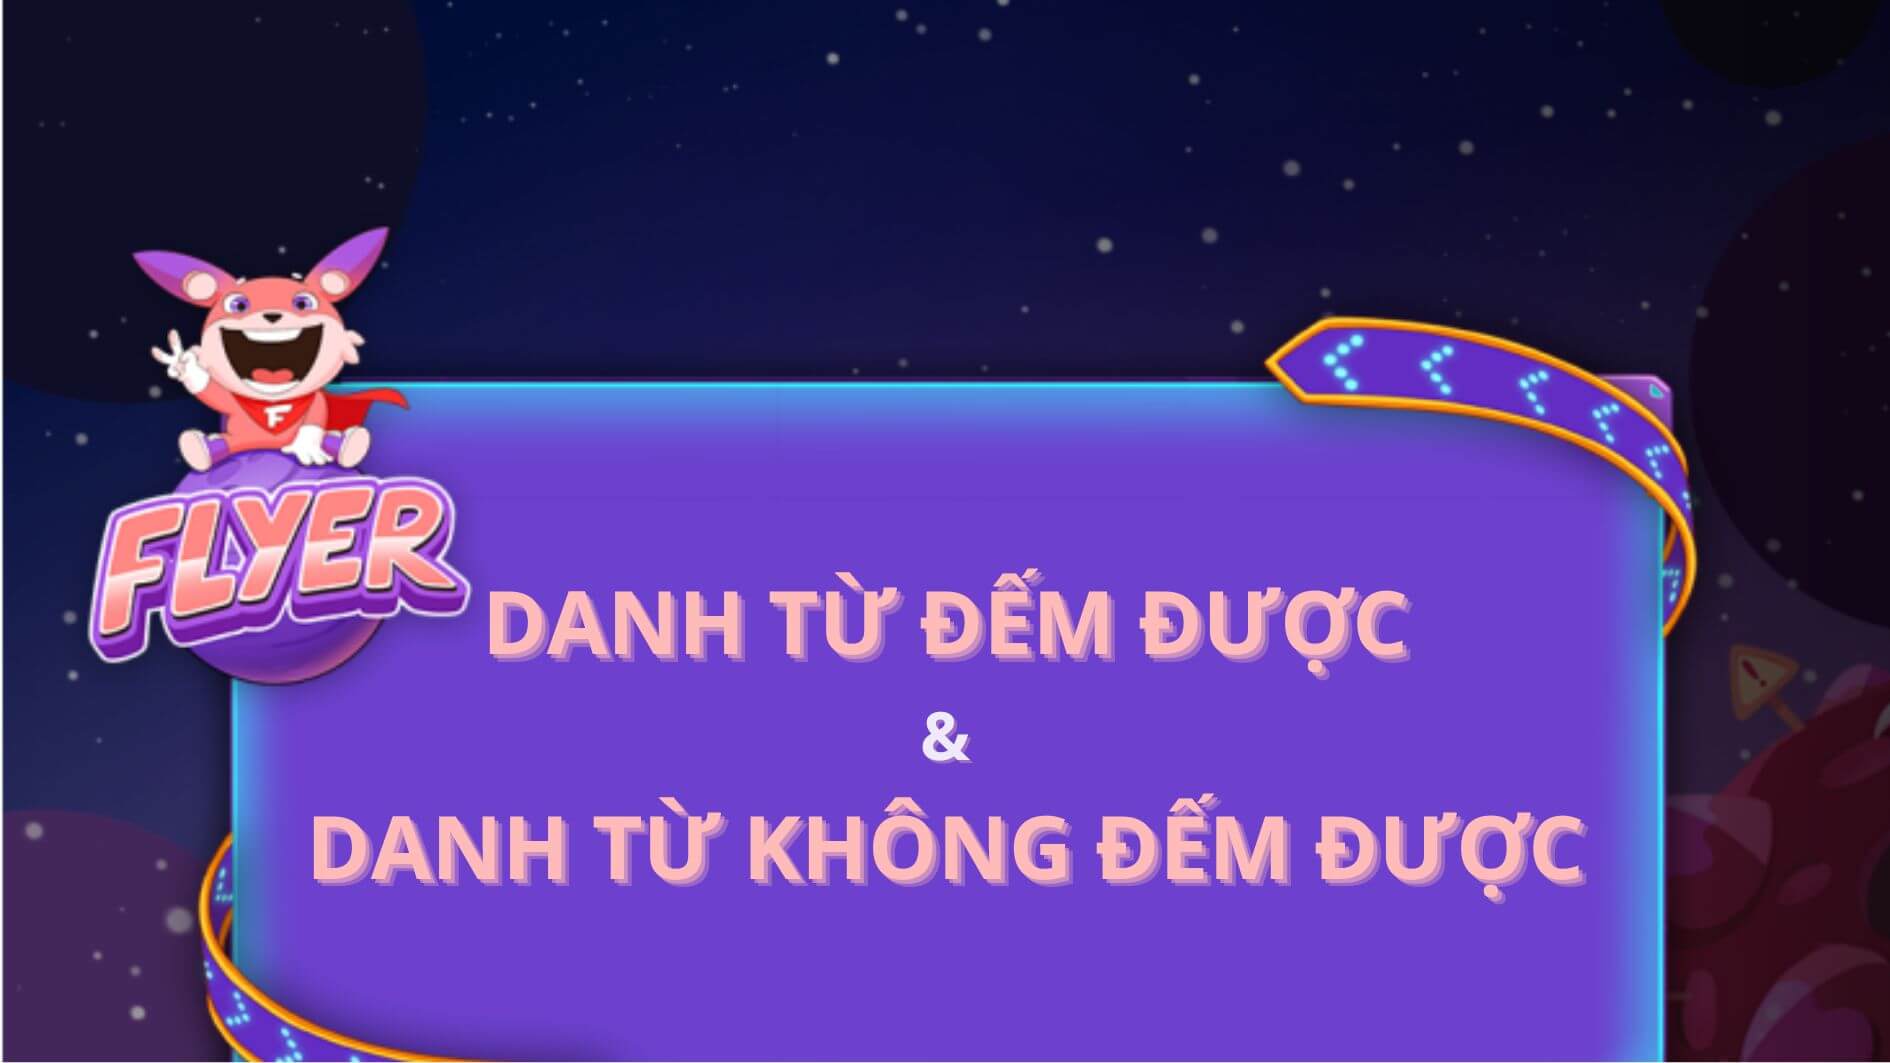 Từ vựng danh từ số ít đếm được thông dụng trong tiếng Việt